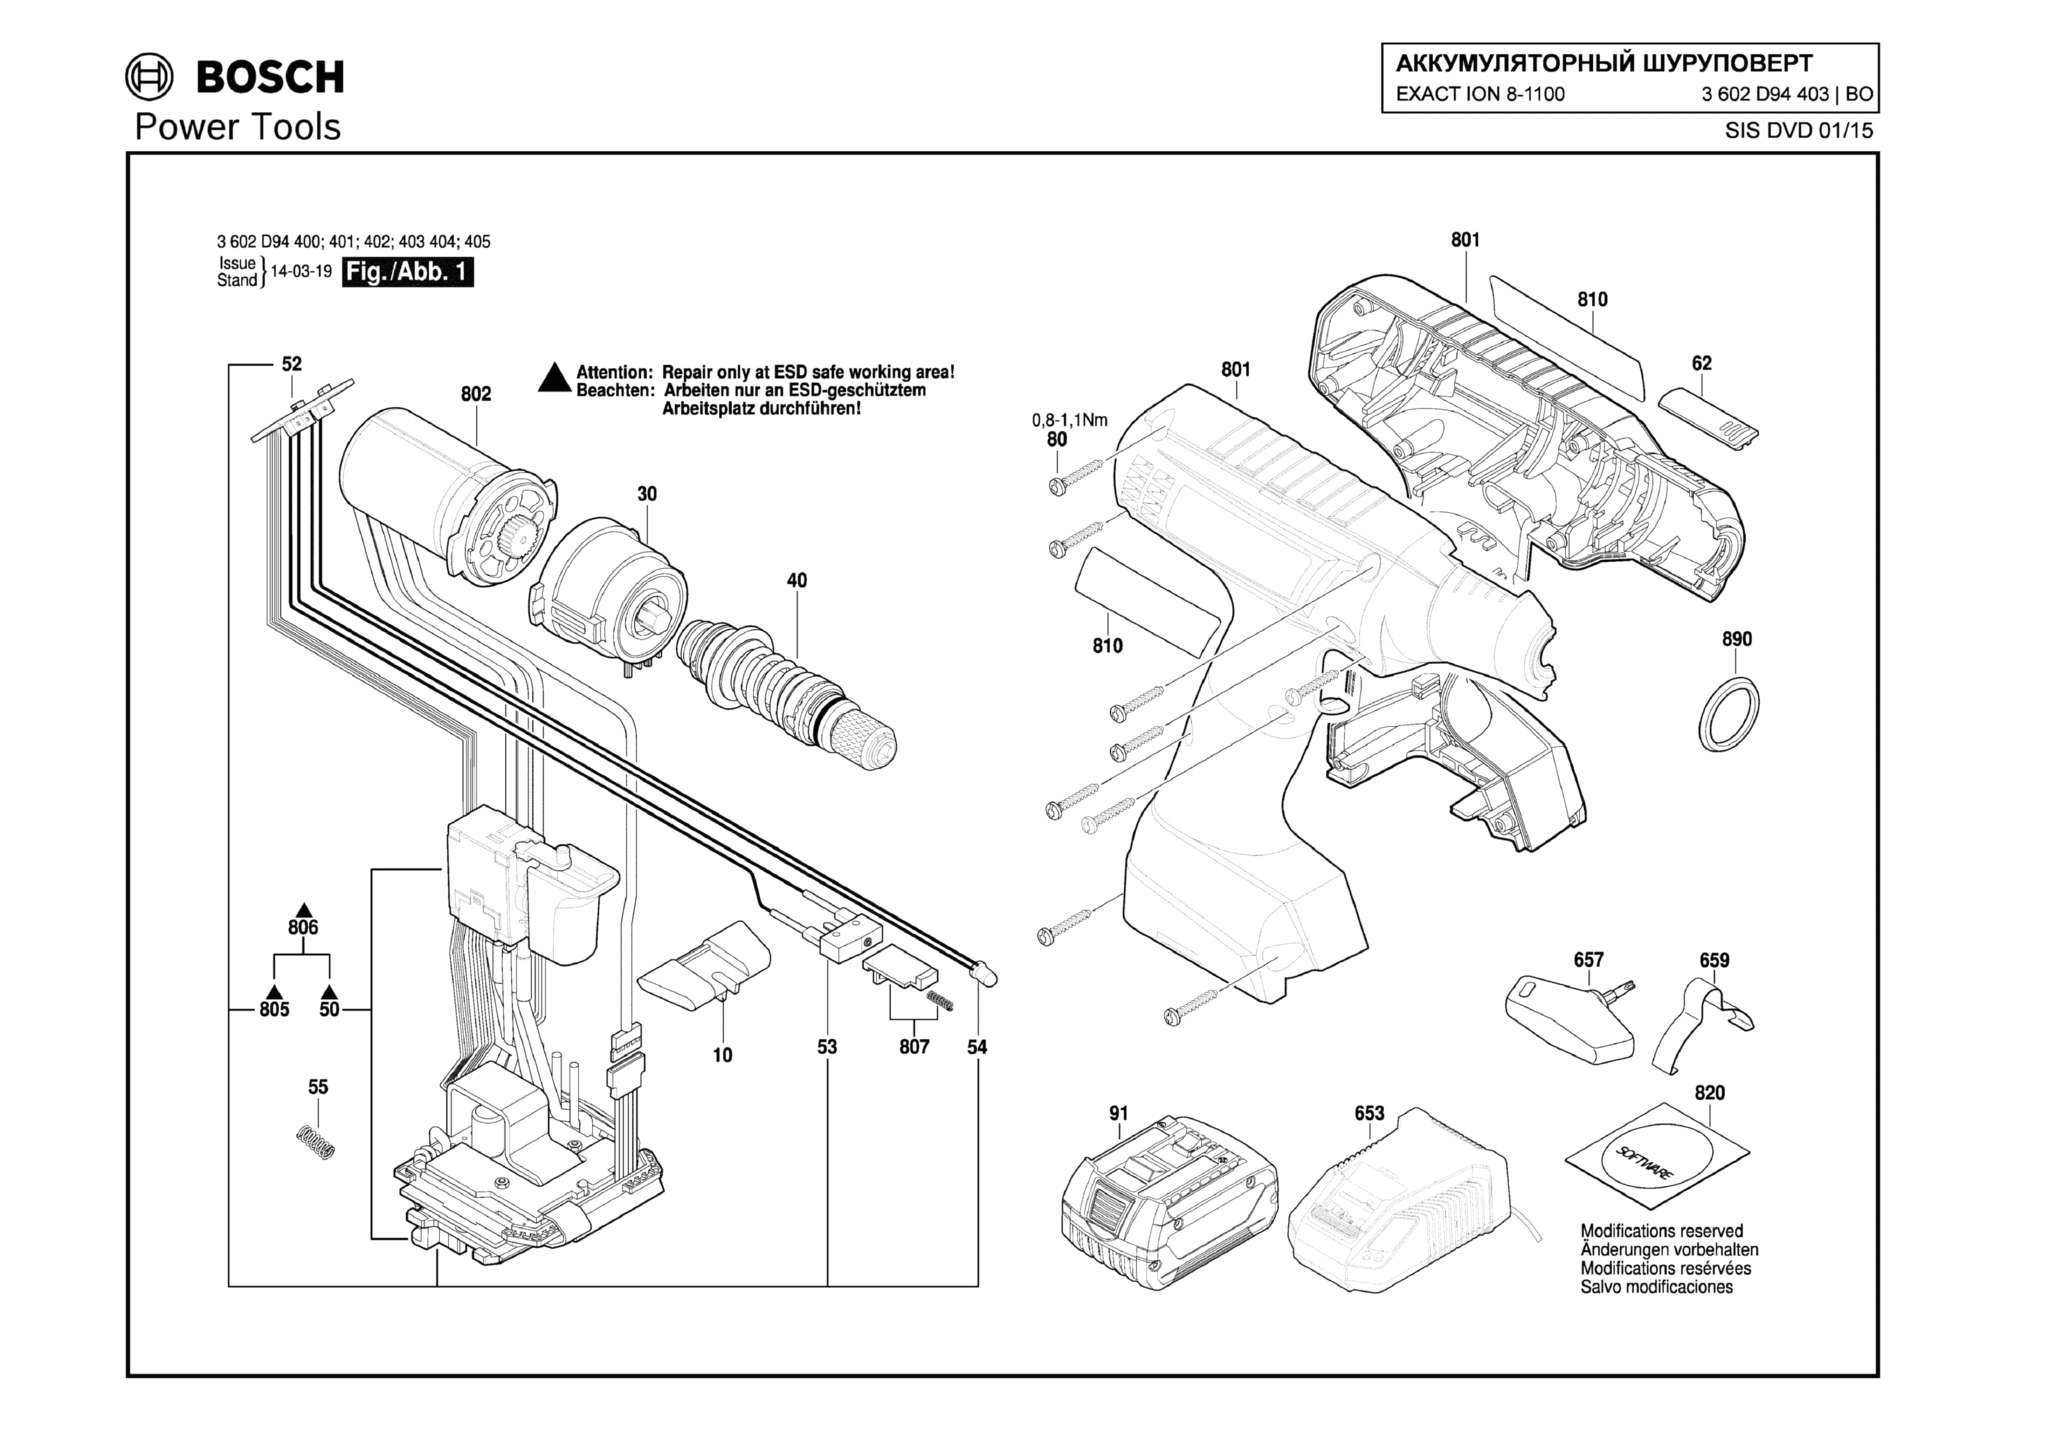 Запчасти, схема и деталировка Bosch EXACT ION 8-1100 (ТИП 3602D94403)